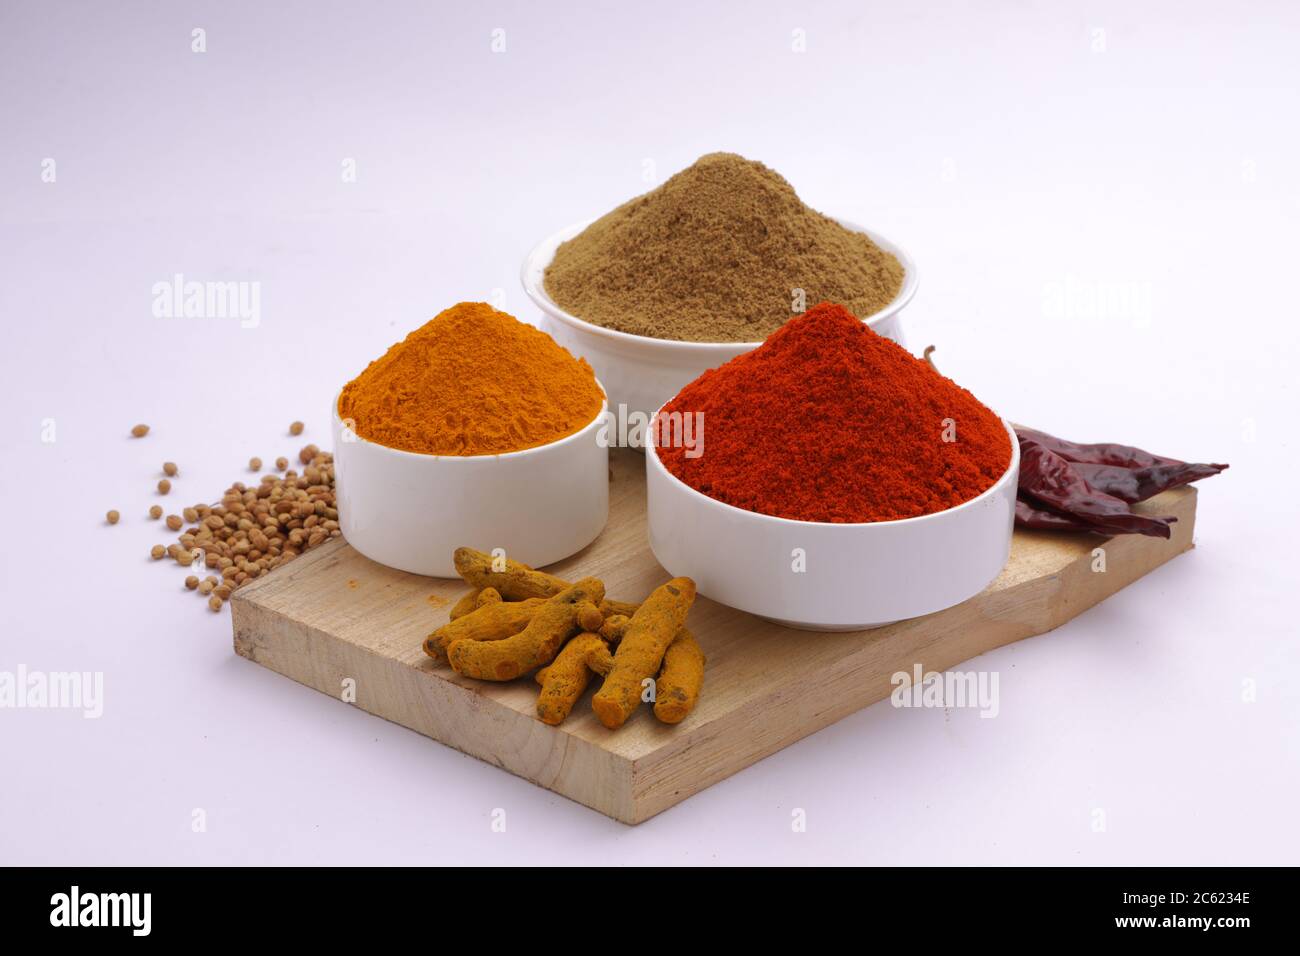 Especias indias: Chile, Turmeric y Coriander son las tres especias básicas  utilizadas para curry o platos indios, dispuestos en un tazón blanco  Fotografía de stock - Alamy